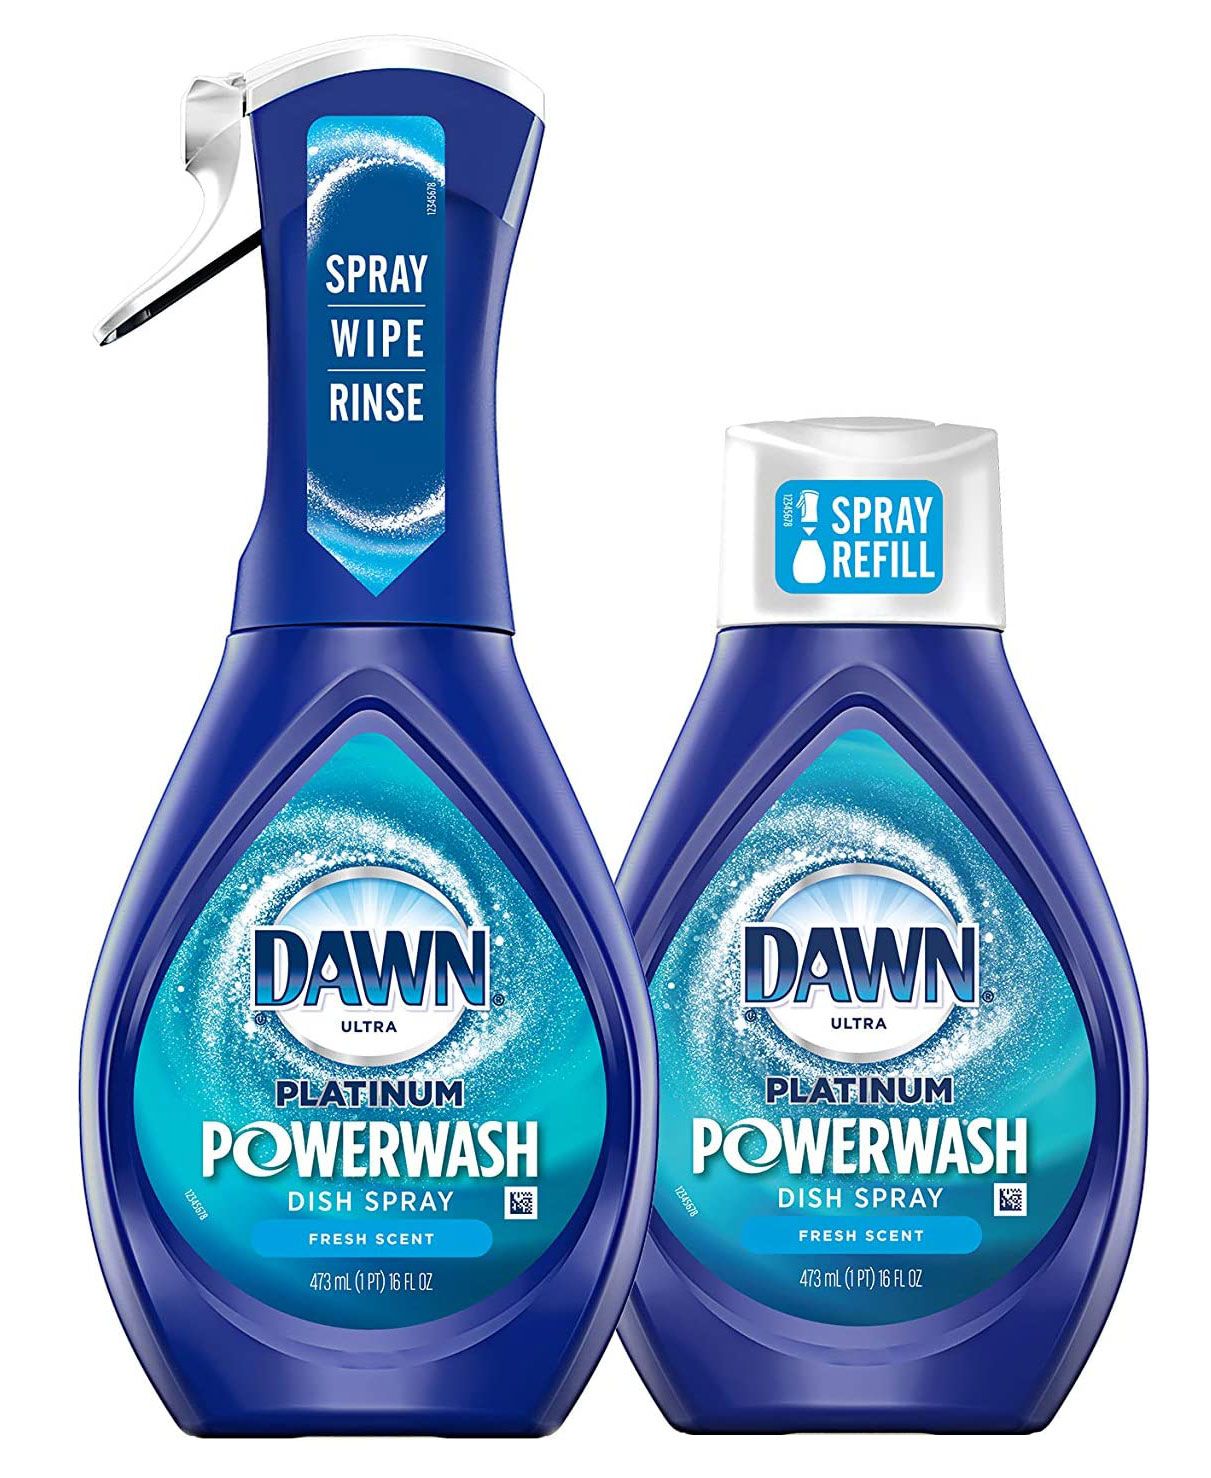 Cele mai inteligente articole 2020 - Dawn Platinum Powerwash